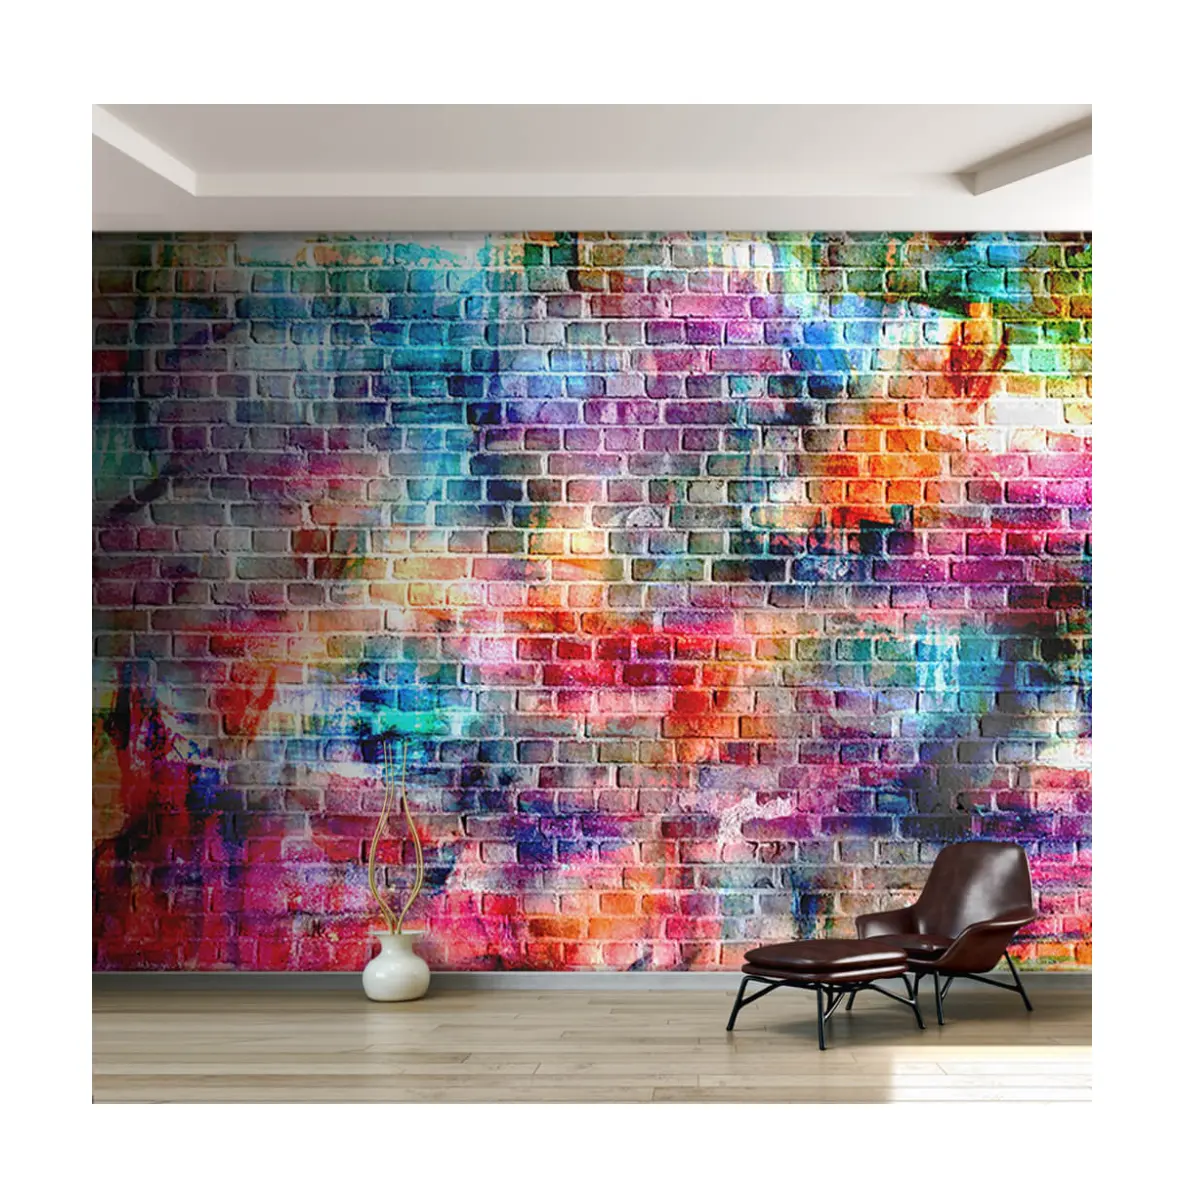 مخصص الملونة رسمت 3d الطوب خلفيات مخصص جداريات اللوحة الطوب جدار ديكورات صناعية للحوائط الداخلية والخارجية جداريات s ديكور